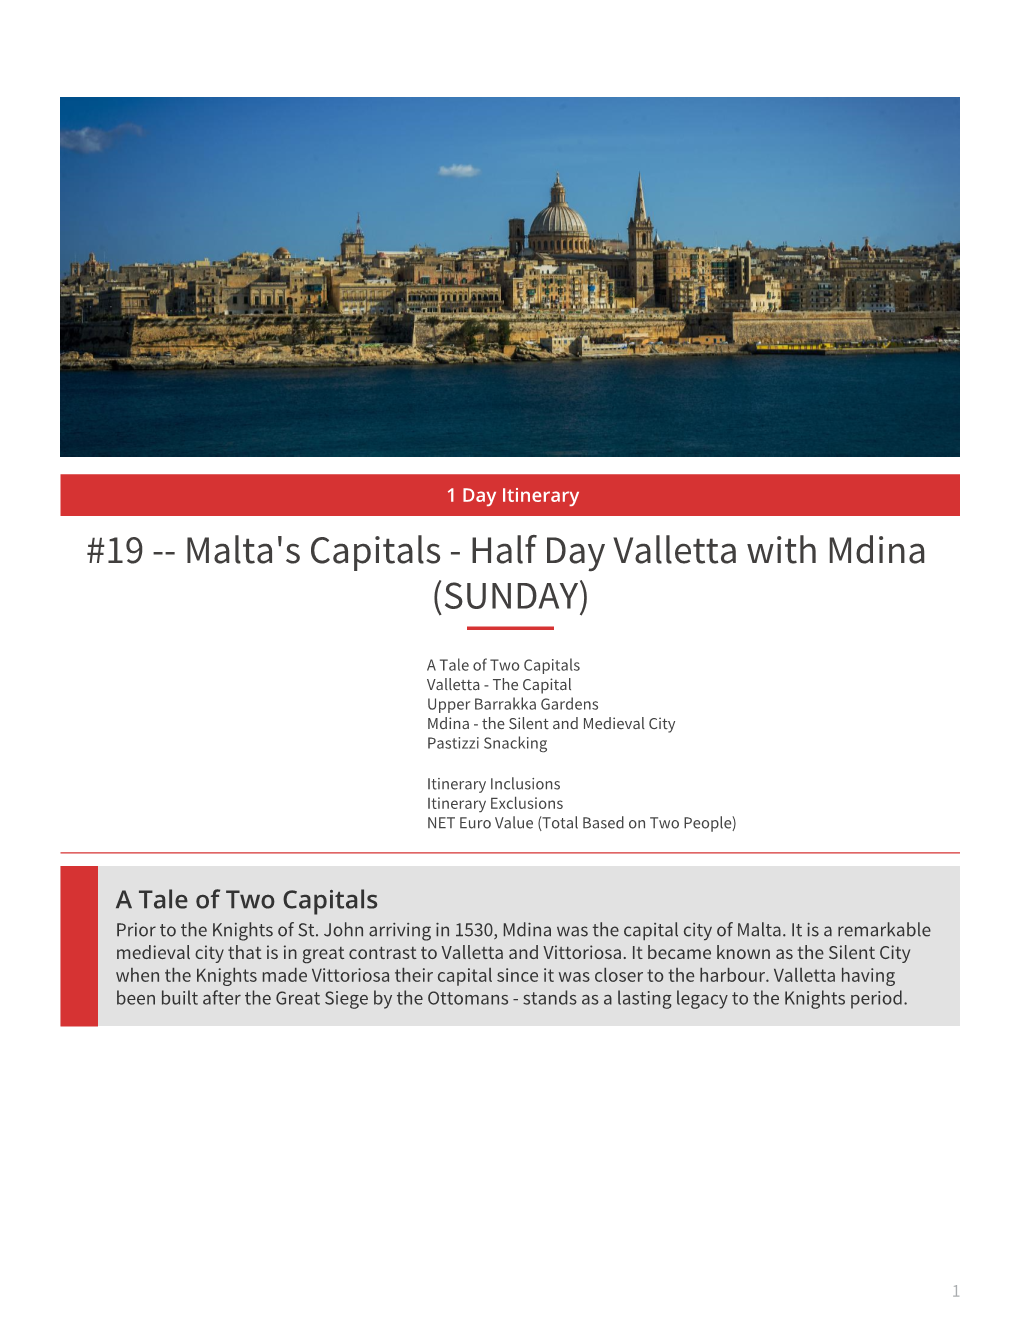 Half Day Valletta with Mdina (SUNDAY)